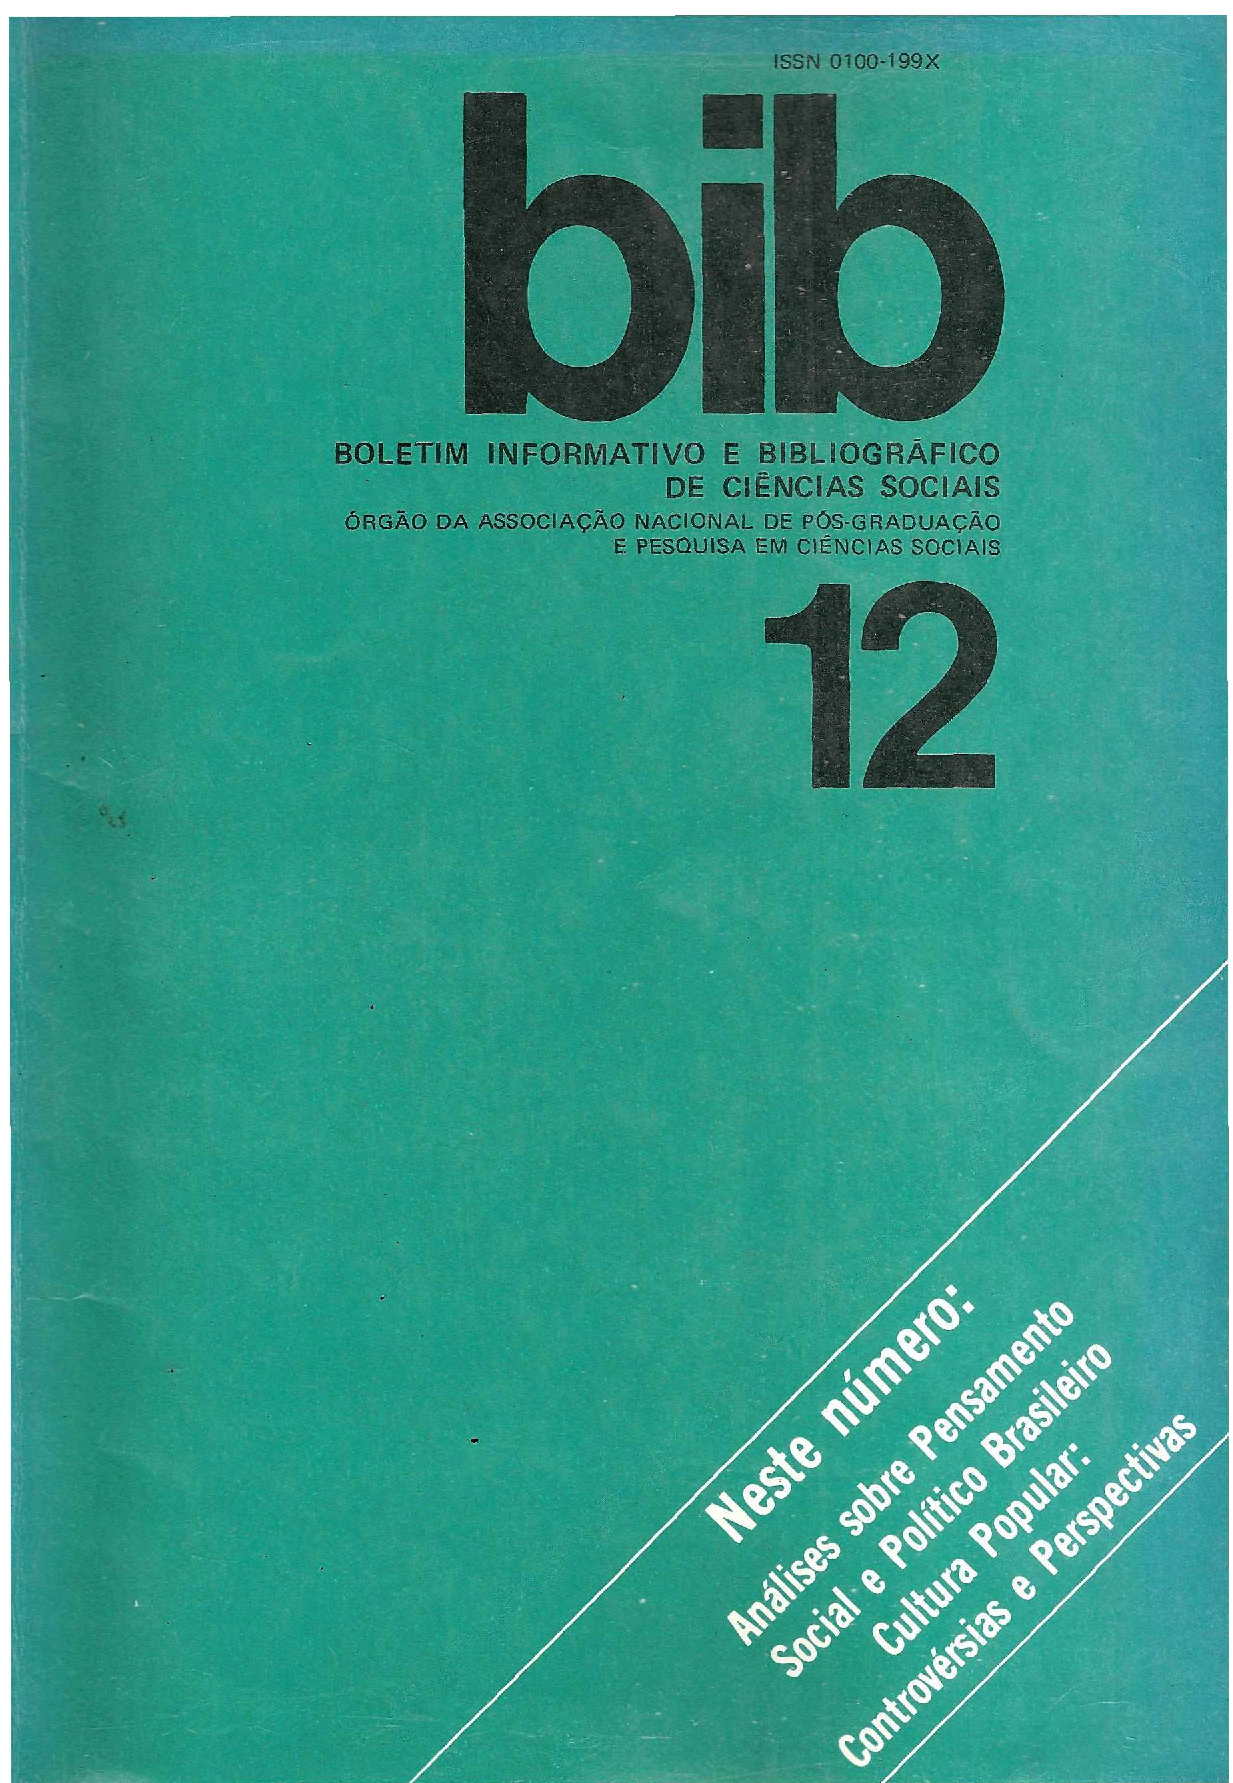 					View No. 12 (1982)
				